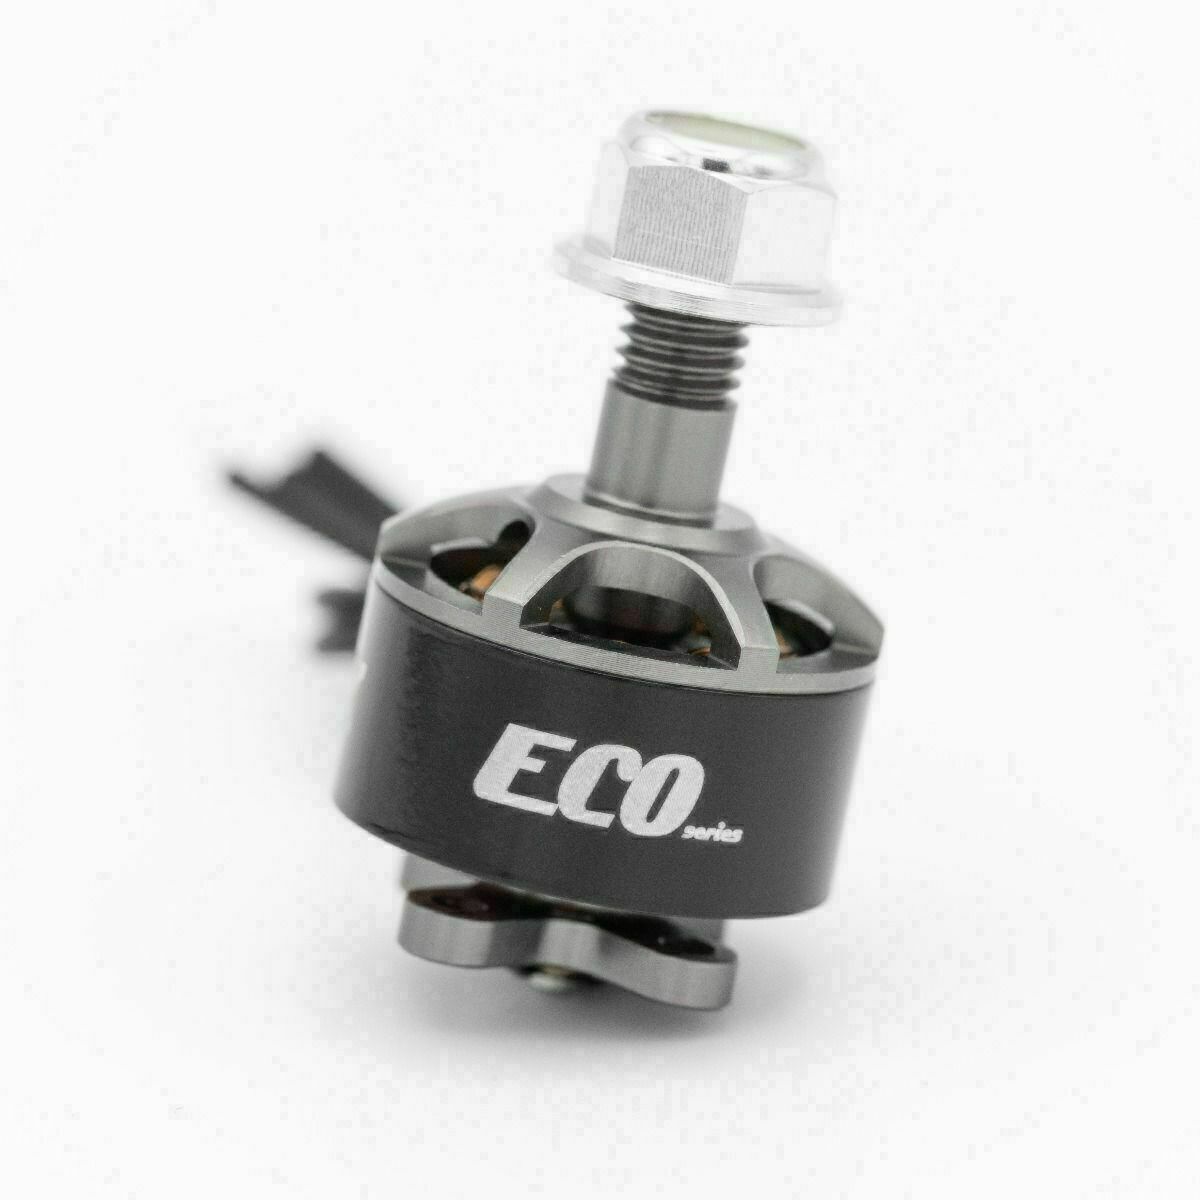 ECO 1407 Brushless Motor